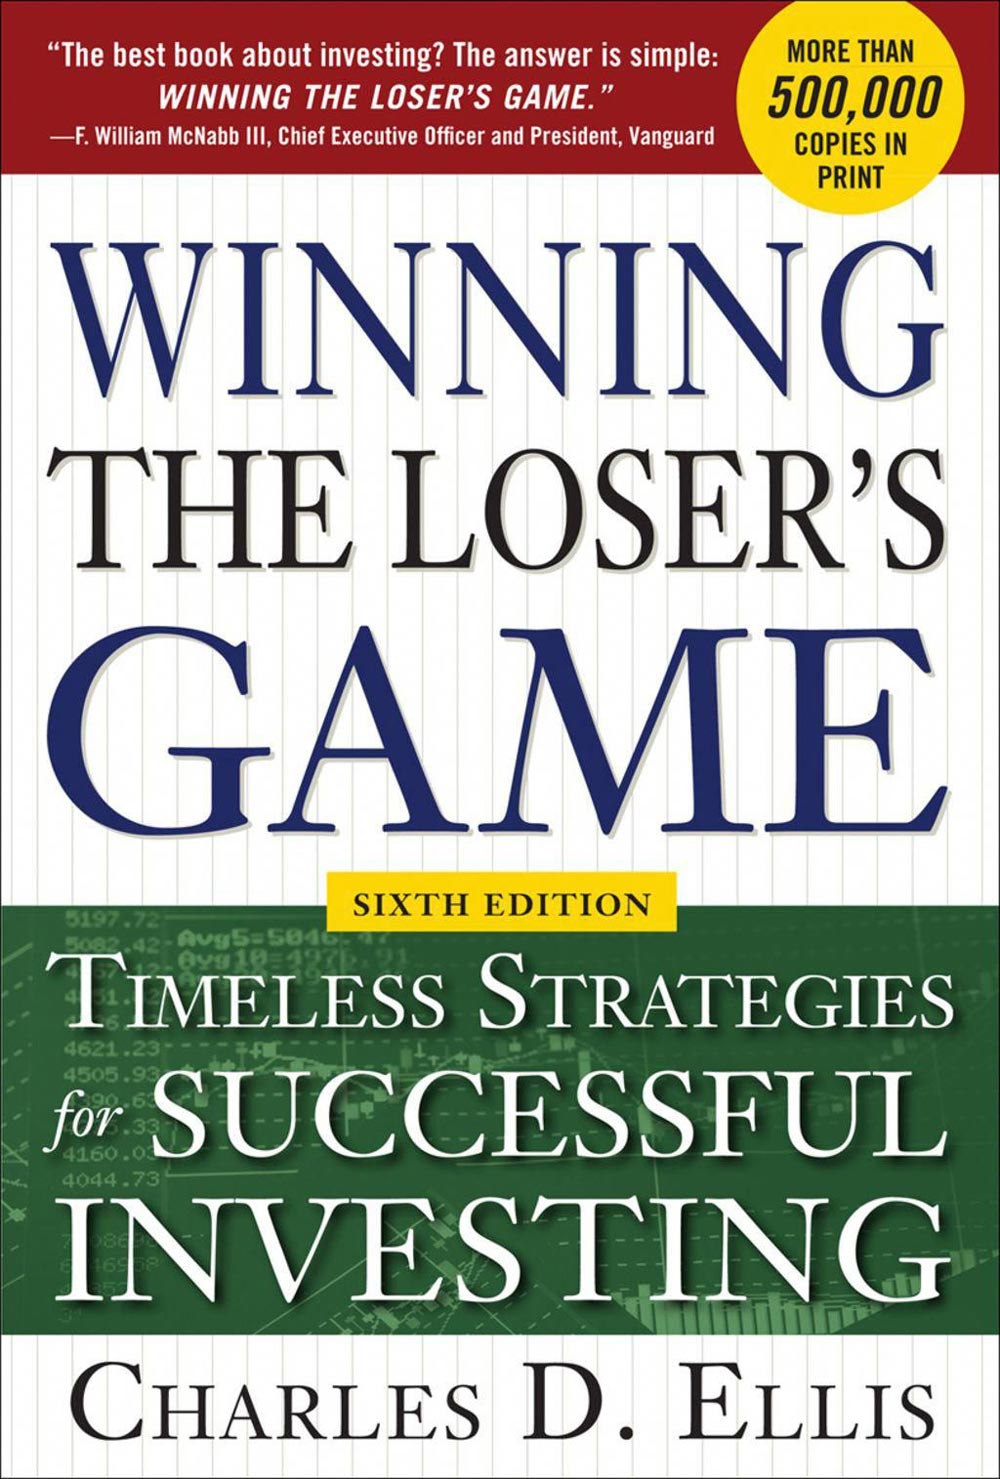 Winning the Loser's Game knjige o investiranju